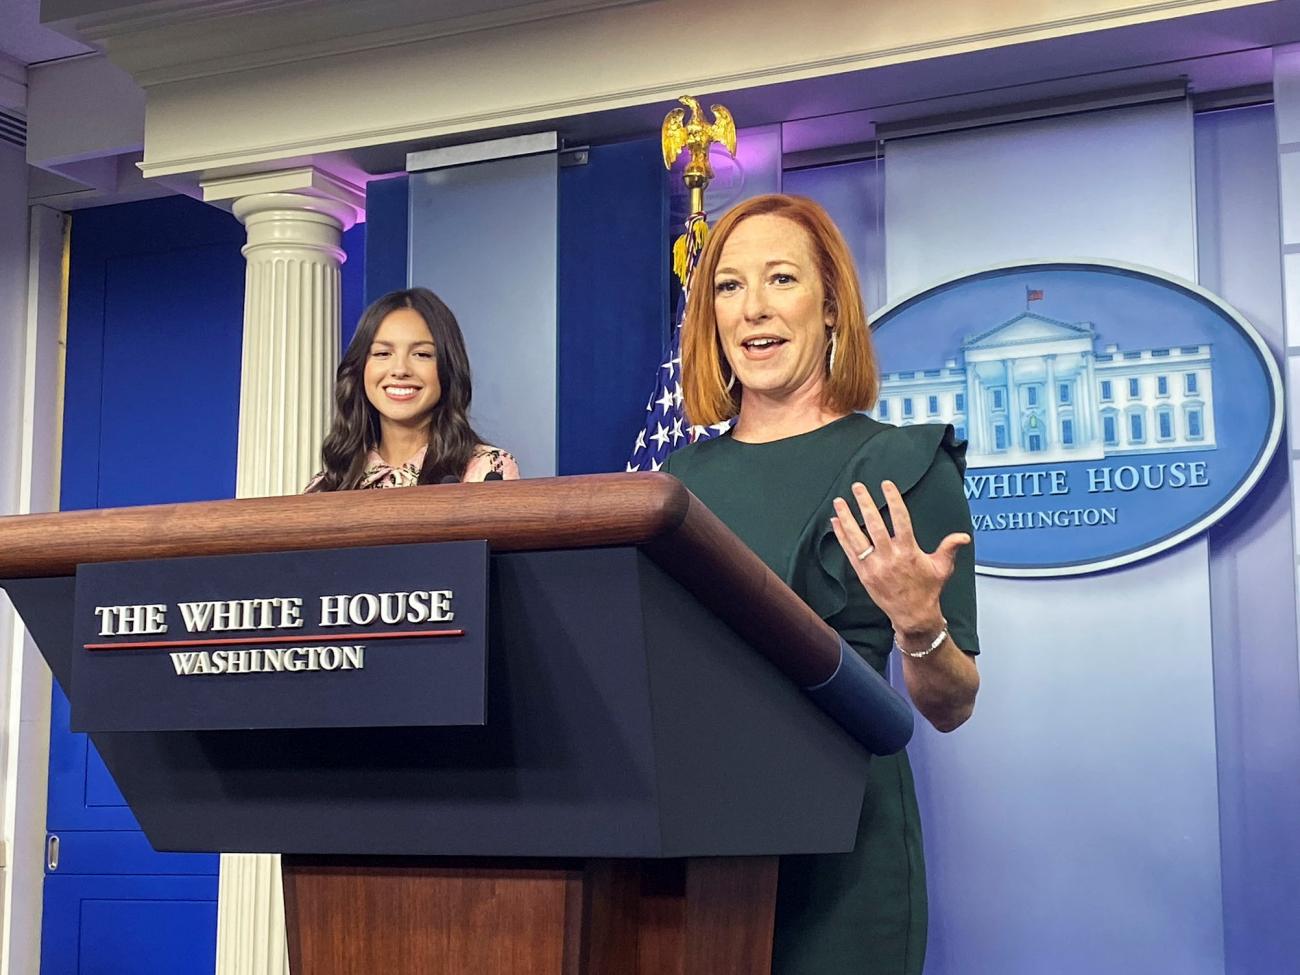 Singer Olivia Rodrigo and White House Press Secretary Jen Psaki stand at a podium at the White House